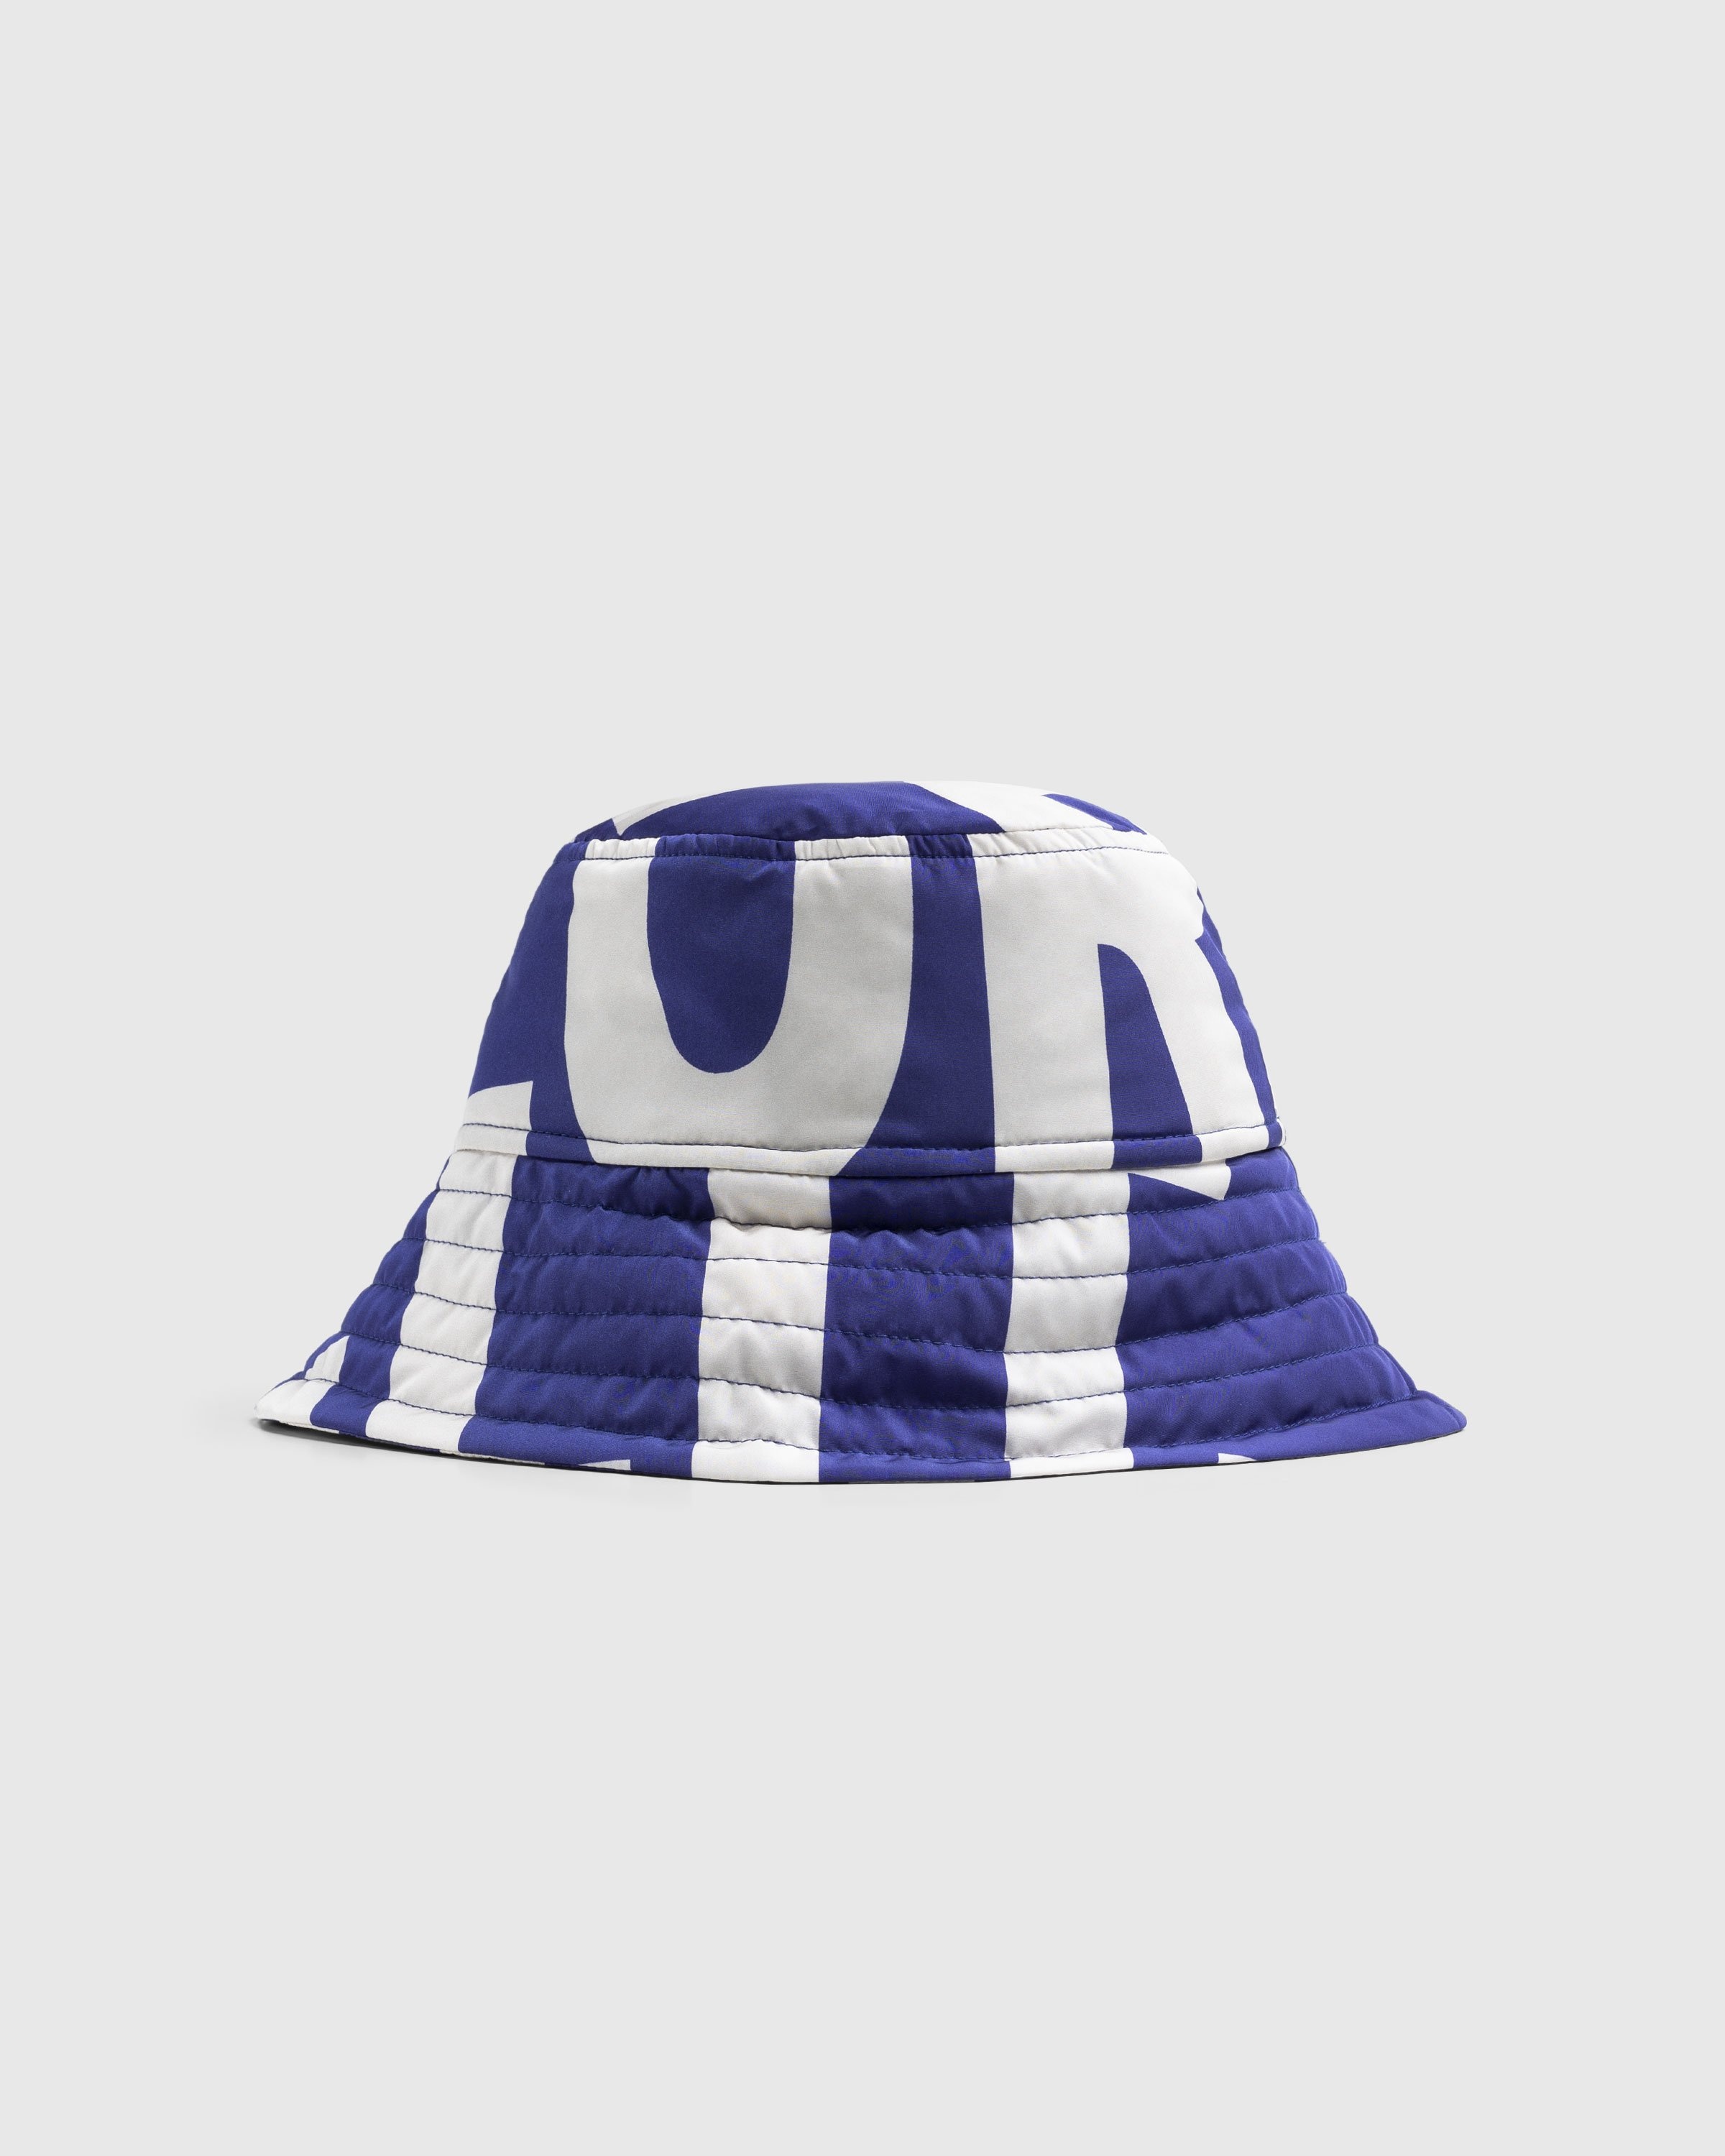 Dries van Noten – Gilly Hat Blue - Bucket Hats - Blue - Image 1